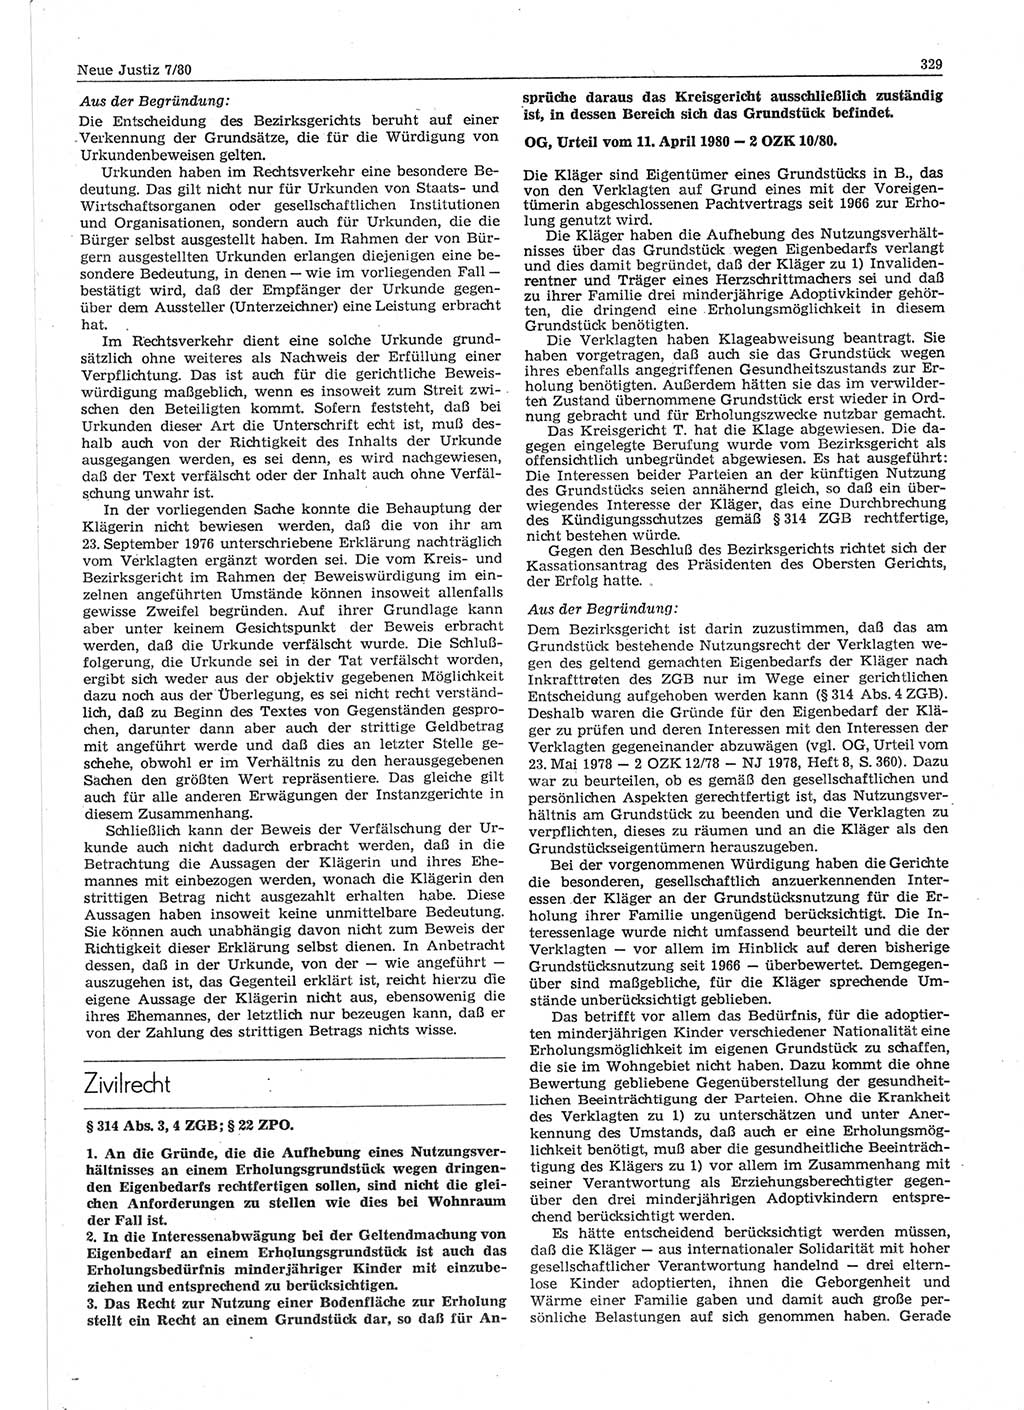 Neue Justiz (NJ), Zeitschrift für sozialistisches Recht und Gesetzlichkeit [Deutsche Demokratische Republik (DDR)], 34. Jahrgang 1980, Seite 329 (NJ DDR 1980, S. 329)